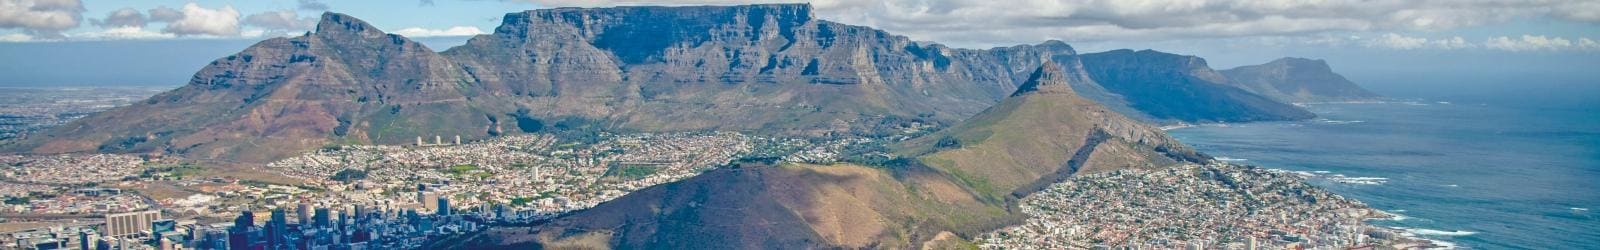 Cosa vedere a Cape Town: 10 attrazioni da visitare | Turisanda